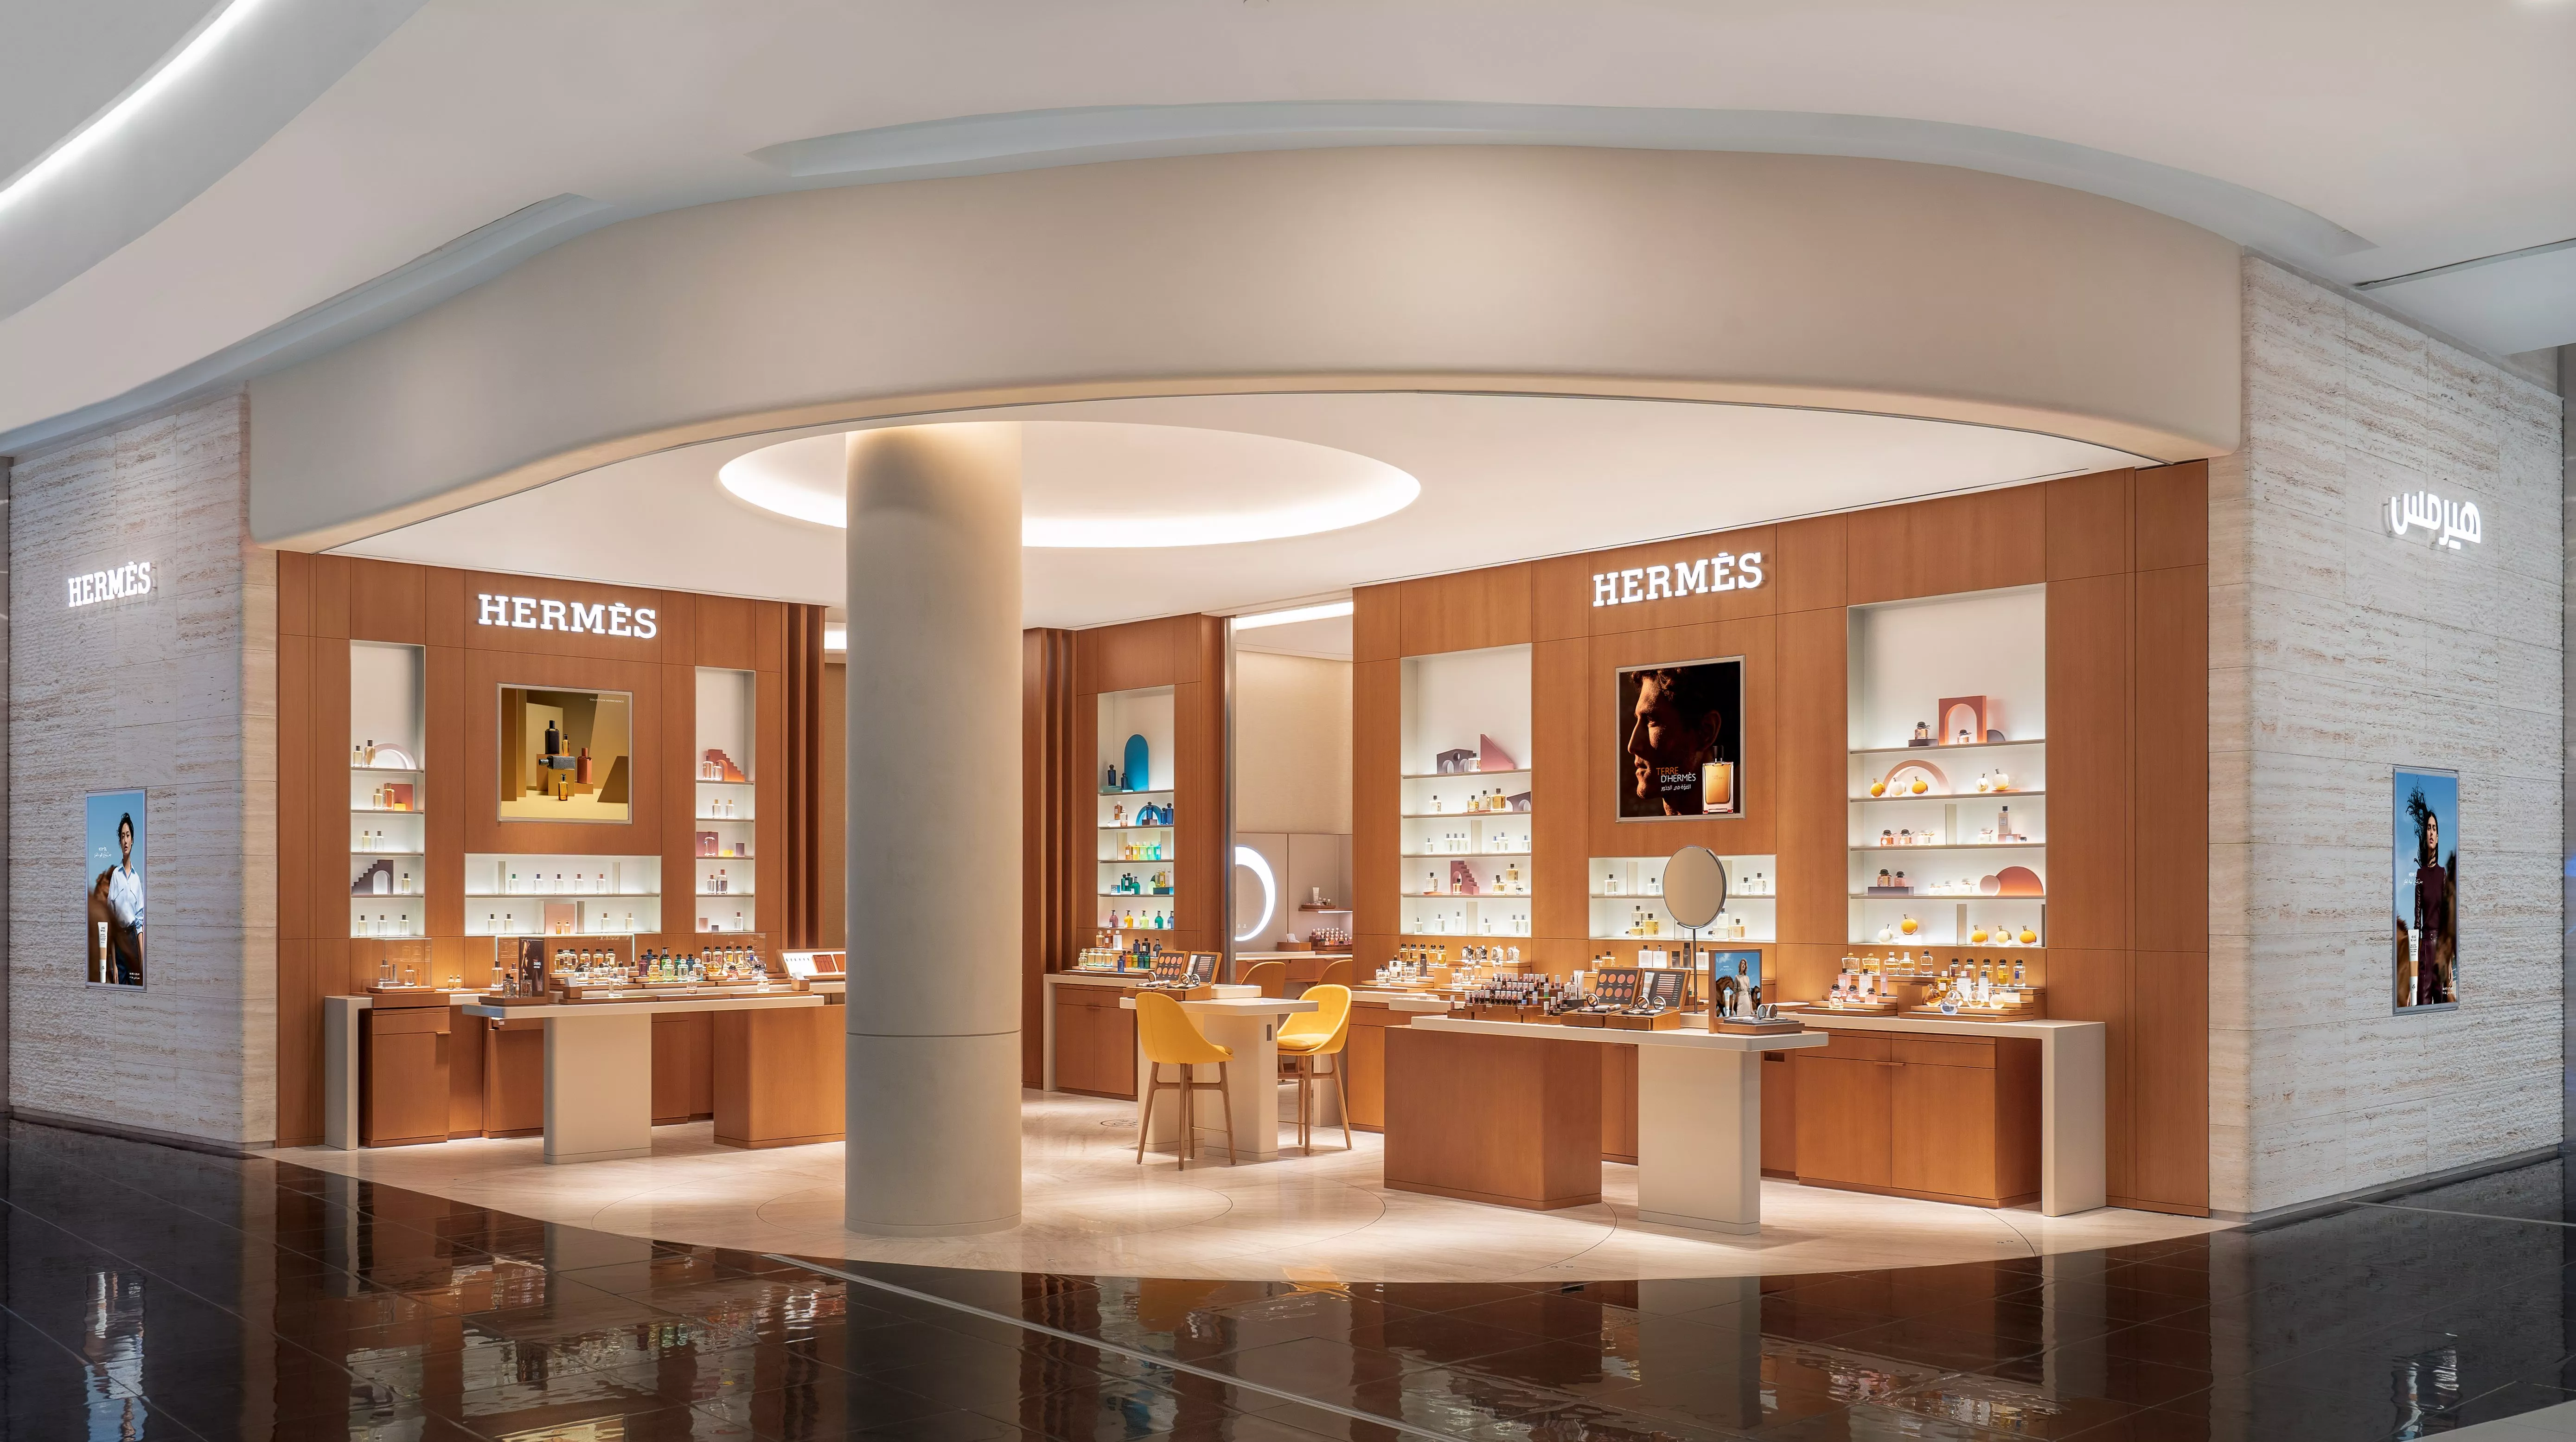 Hermès تفتح أوّل متجر لها مخصّص للعطور والتجميل في مركز الرياض بارك